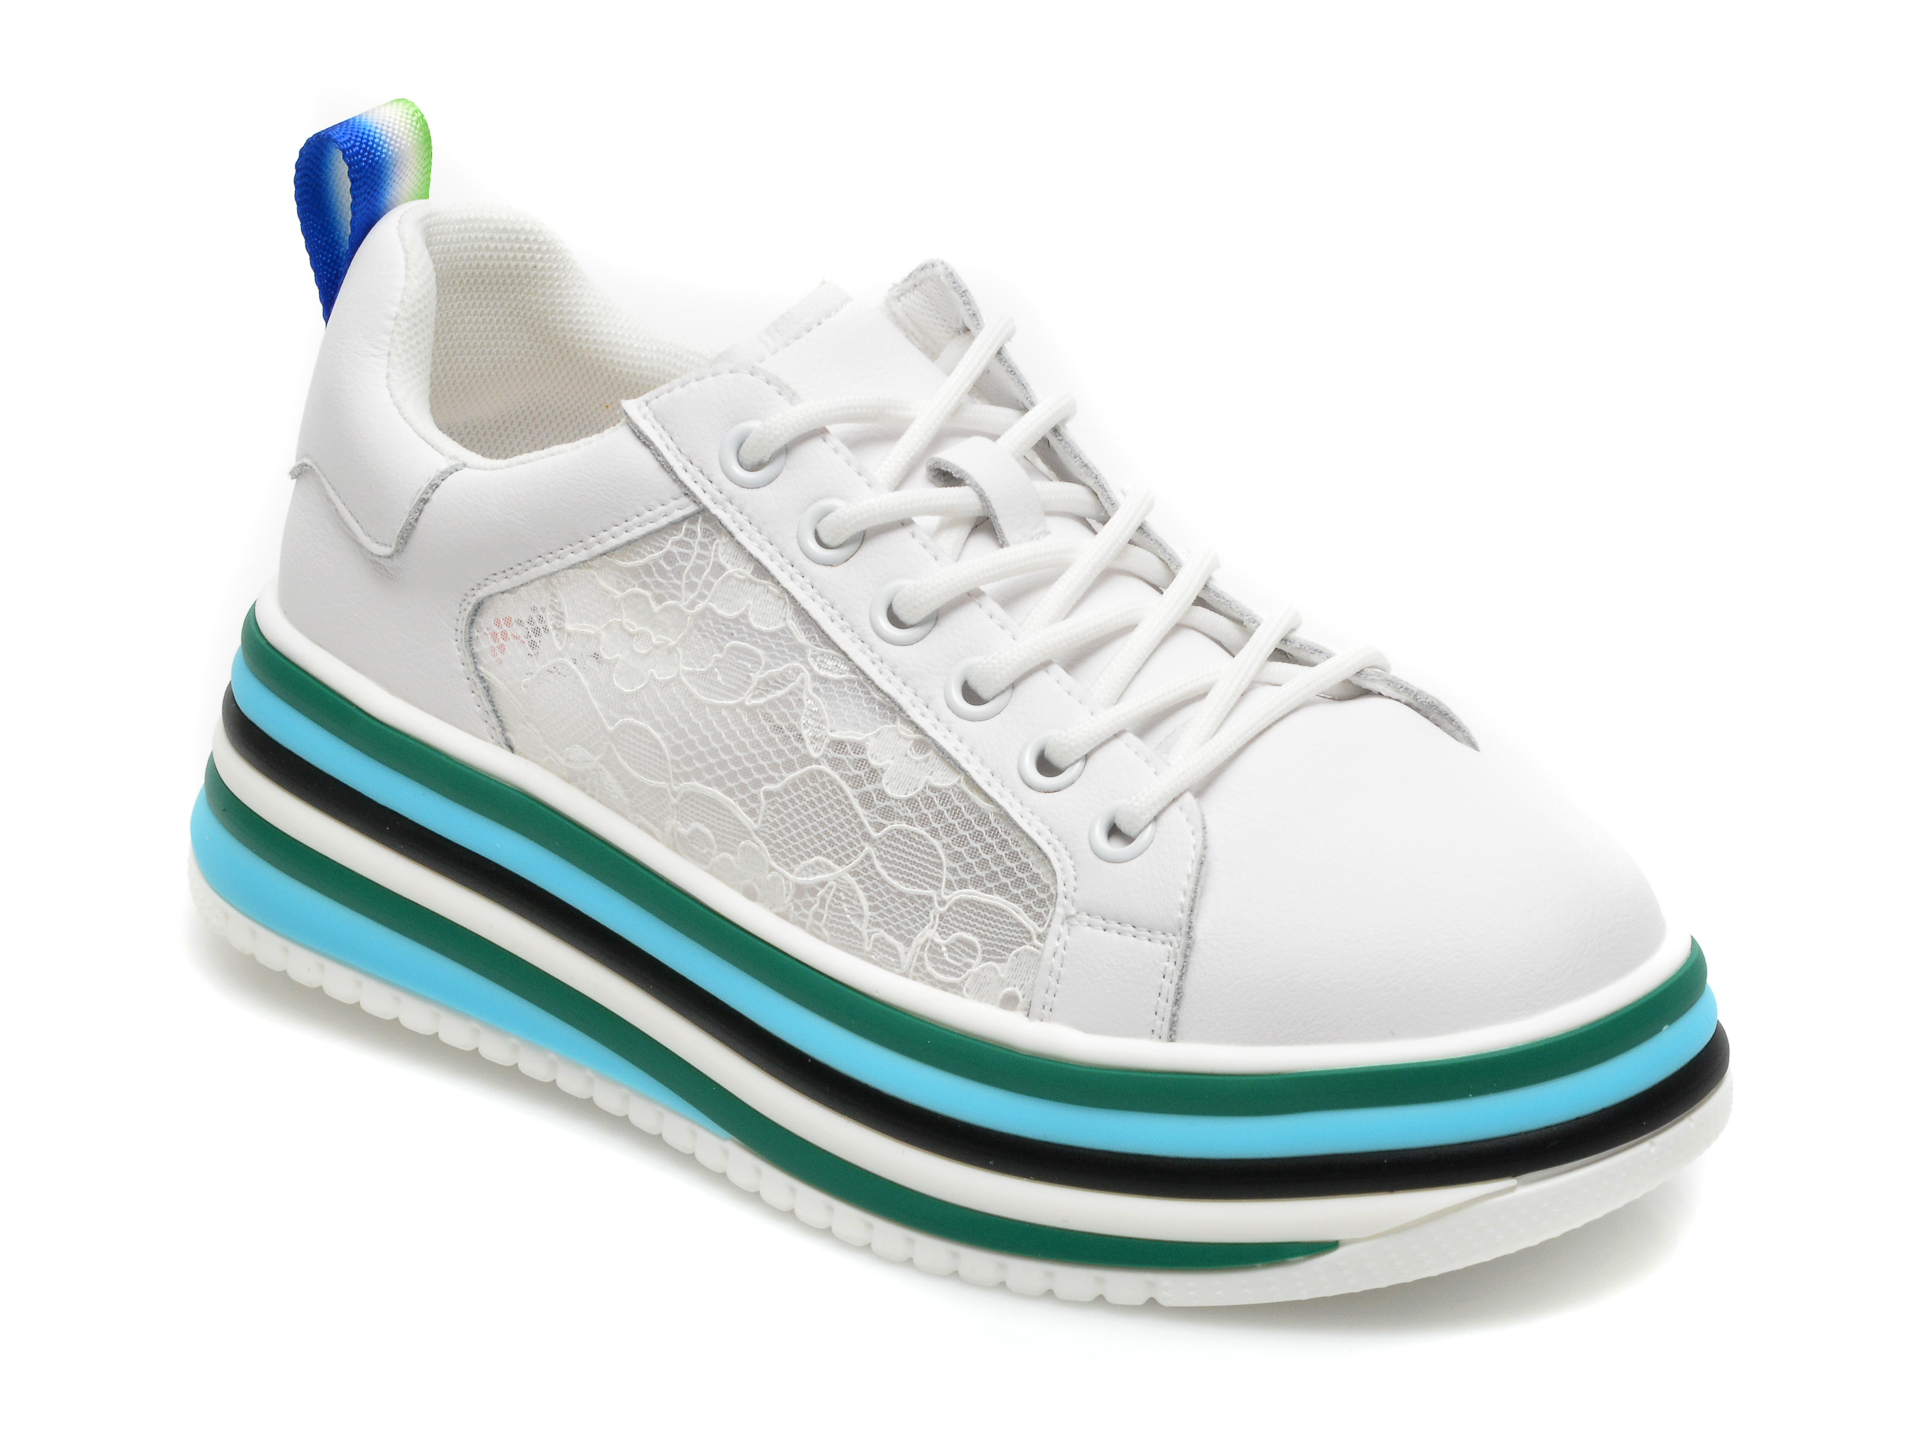 Pantofi sport GRYXX albi 2160, din material textil si piele naturala Gryxx Gryxx